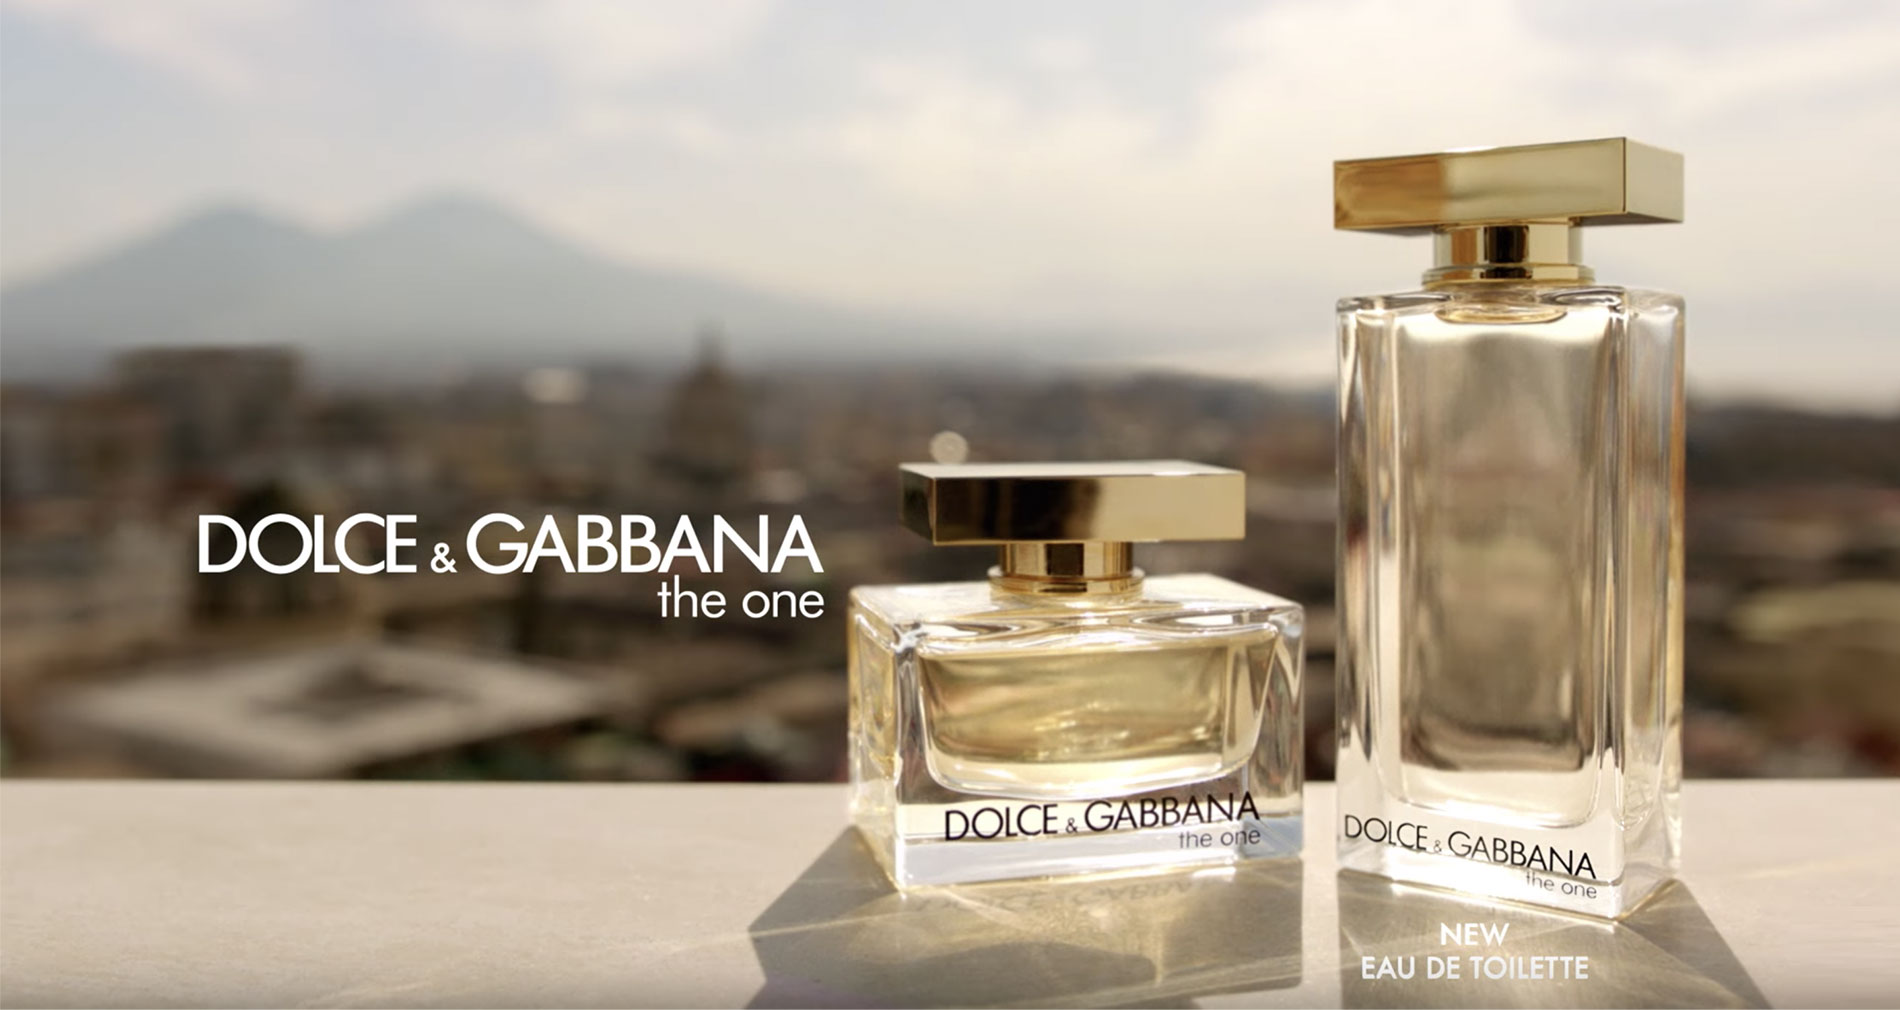 Dolce&Gabbana The One Eau de Toilette.